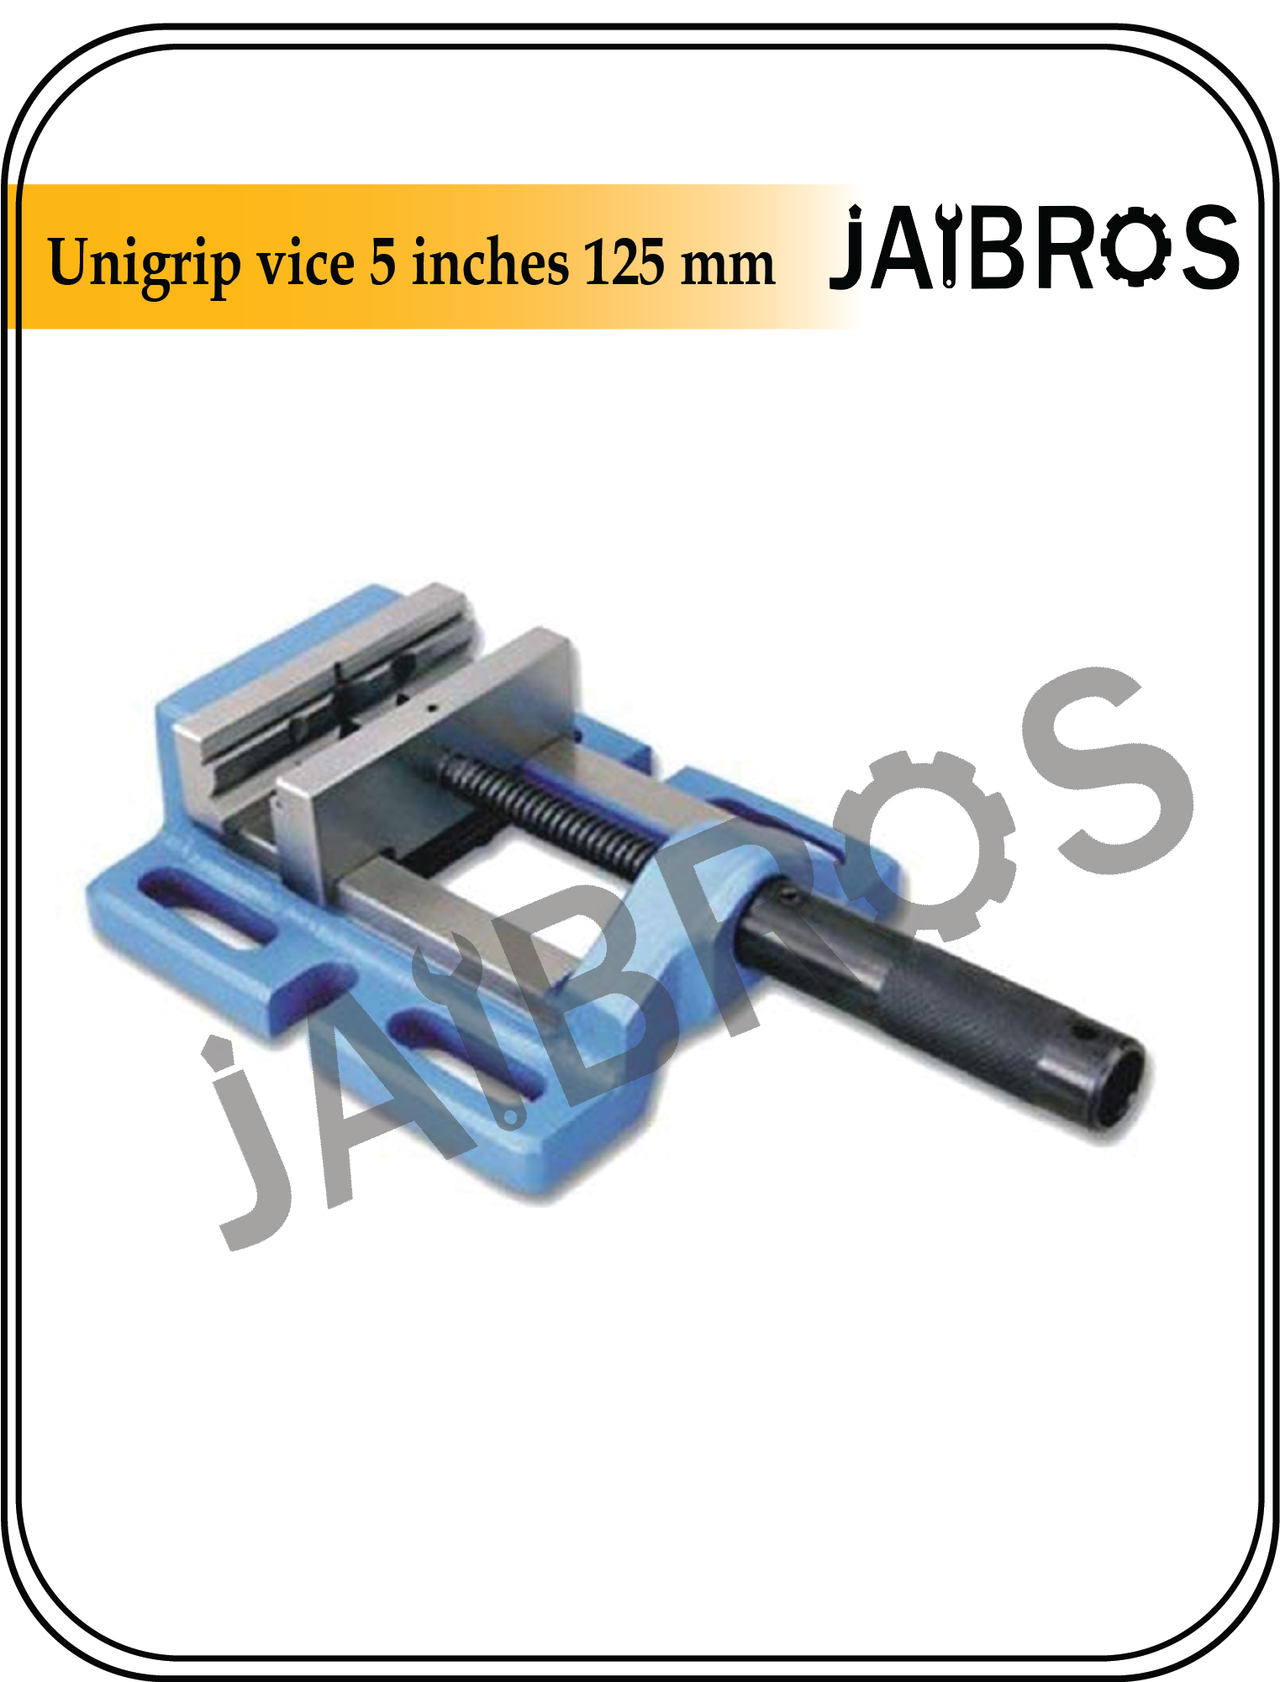 unigrip vice 5 inches 125 mm